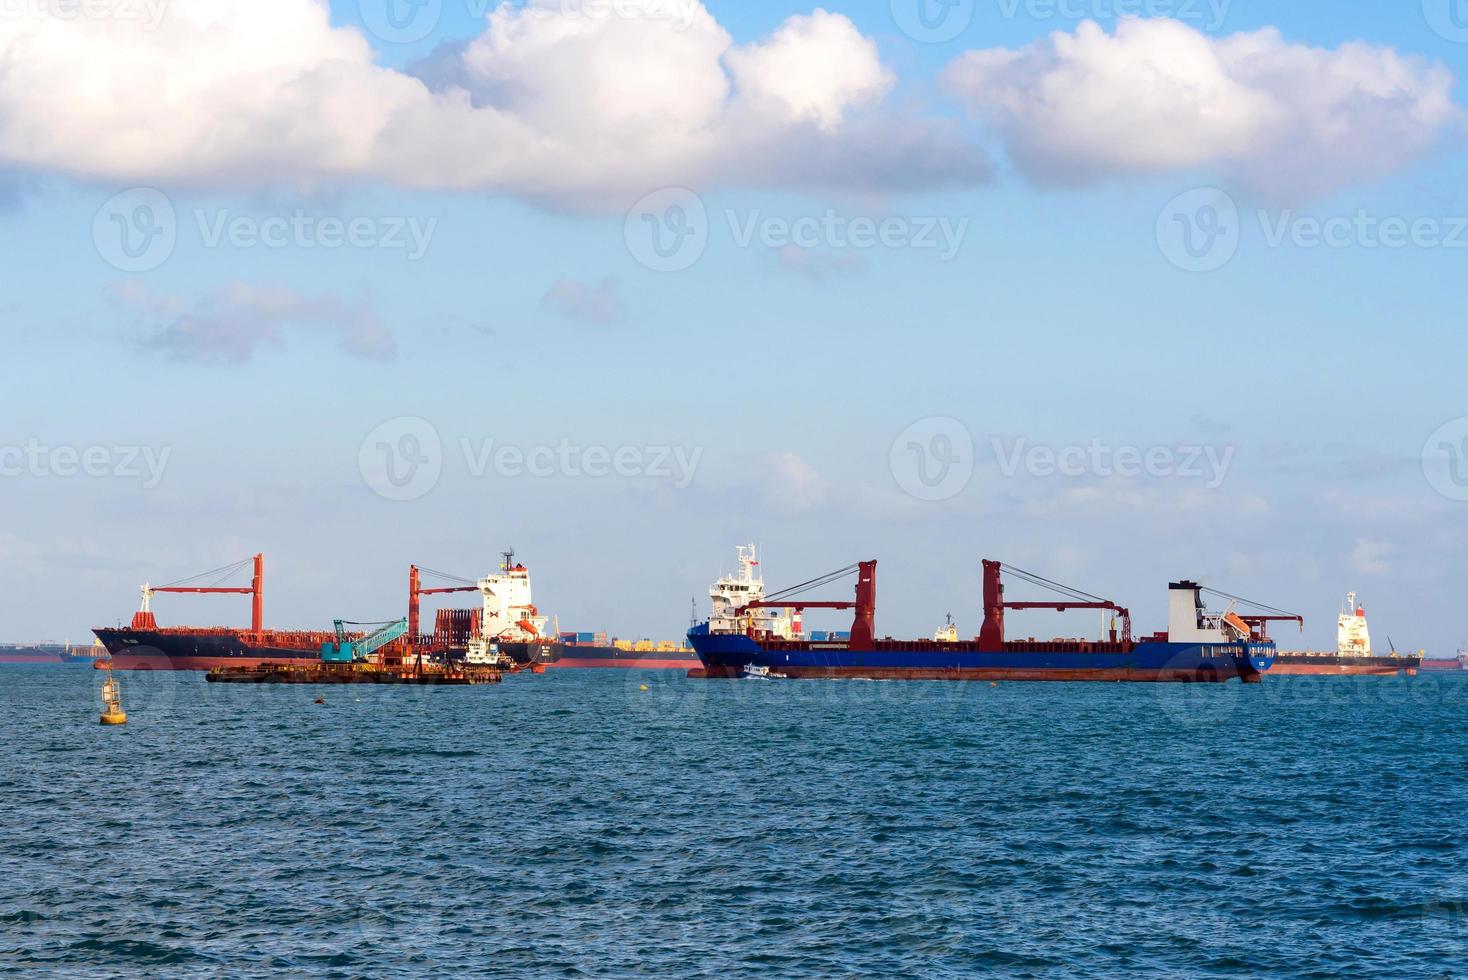 logistiskt containerfartyg på varvet huvudsakliga transport av last containersjöfart vid singapores hamn foto